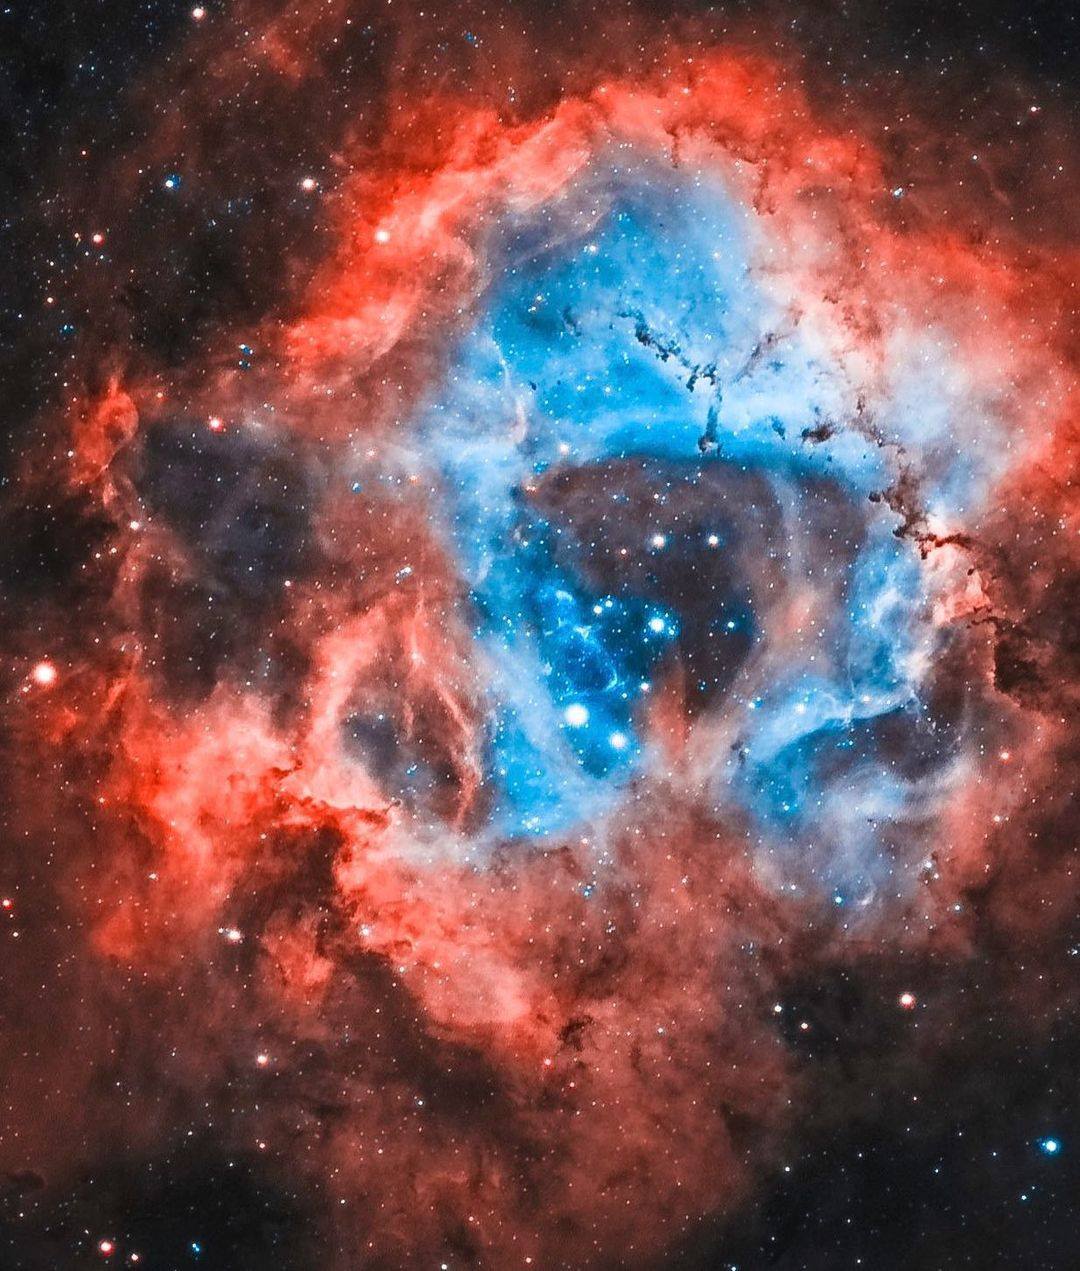 High Quality The Skull in the Rosette Nebula Blank Meme Template